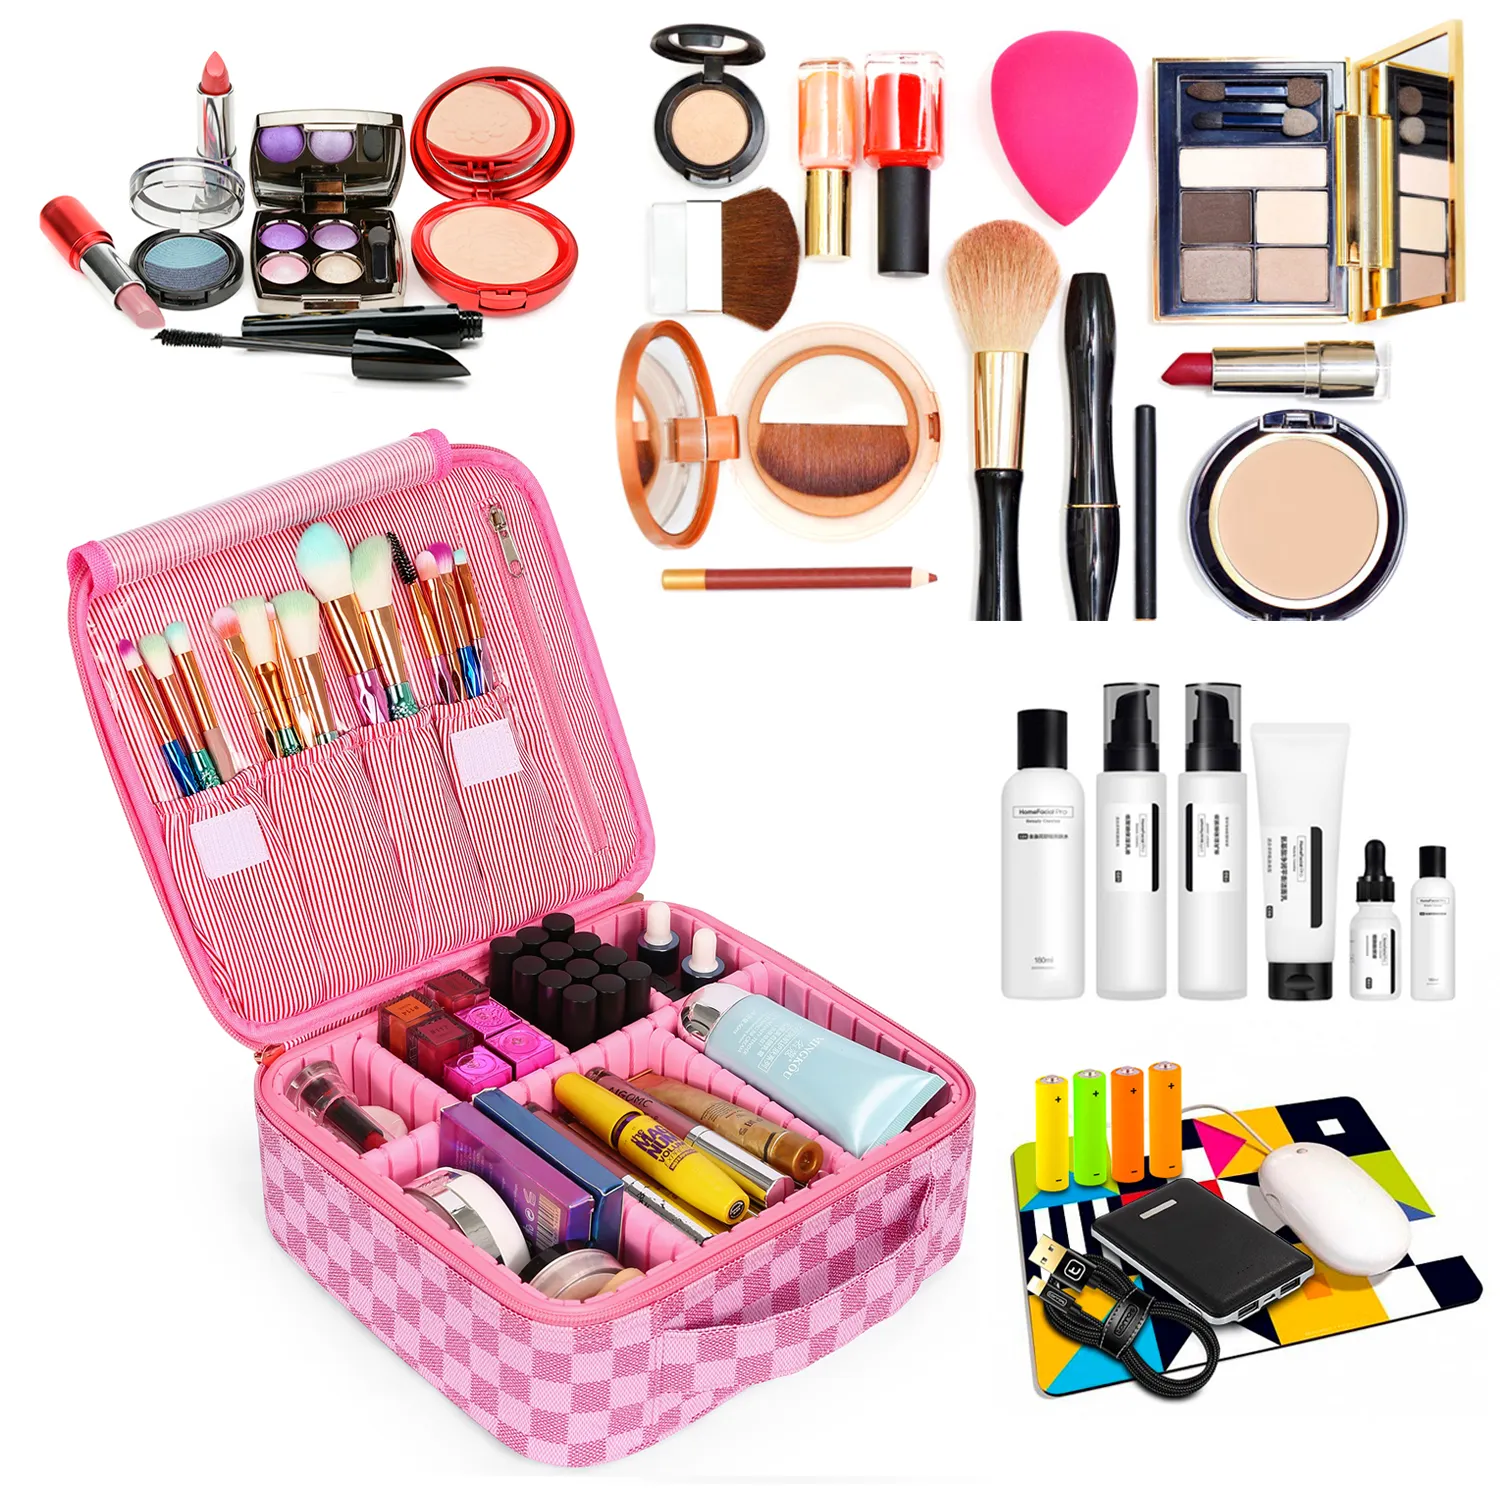 Dalam Stok Gratis Menerima LOGO Kustom Kecantikan PU Casing Makeup Imut Tas Kosmetik Travel Case untuk Wanita